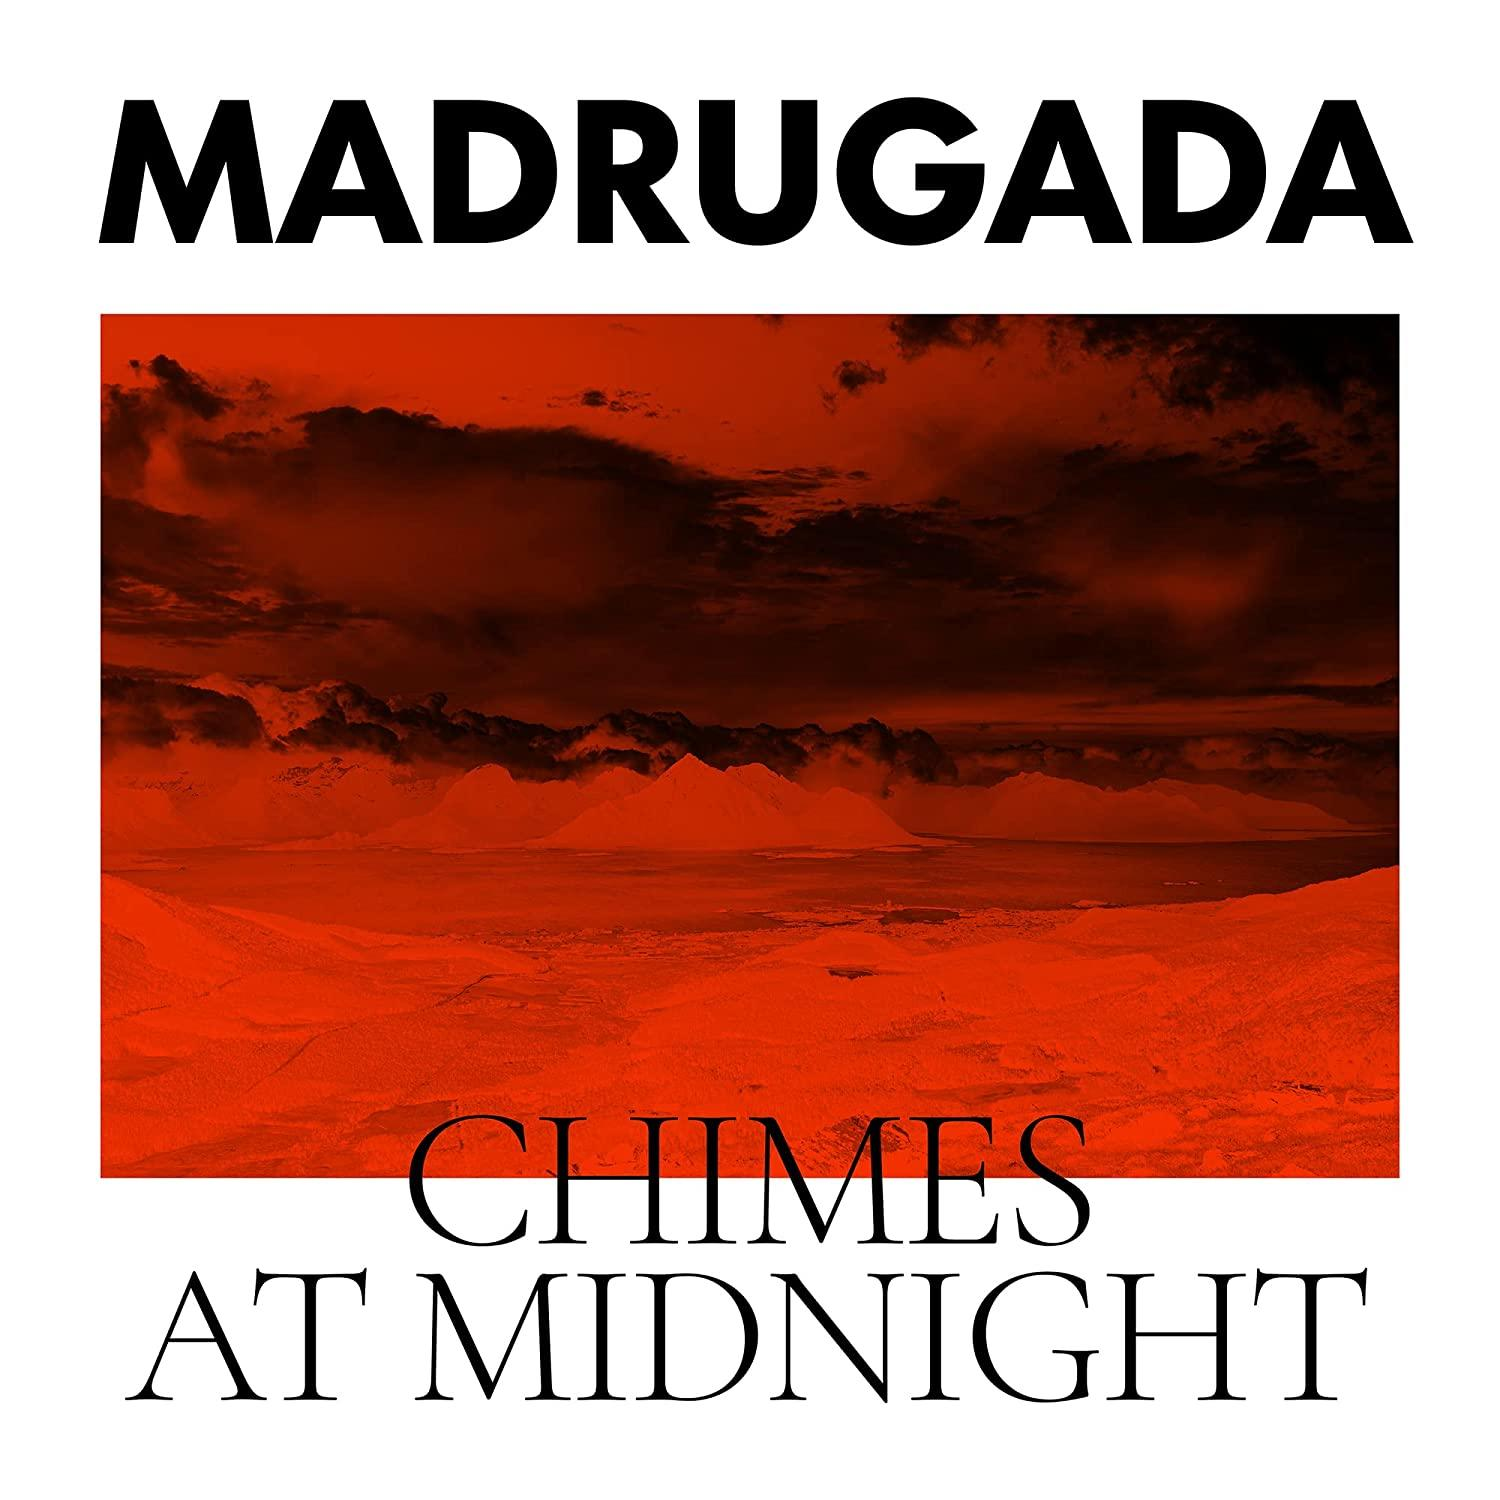 Madrugada - Chimes Midnight - At (Vinyl)